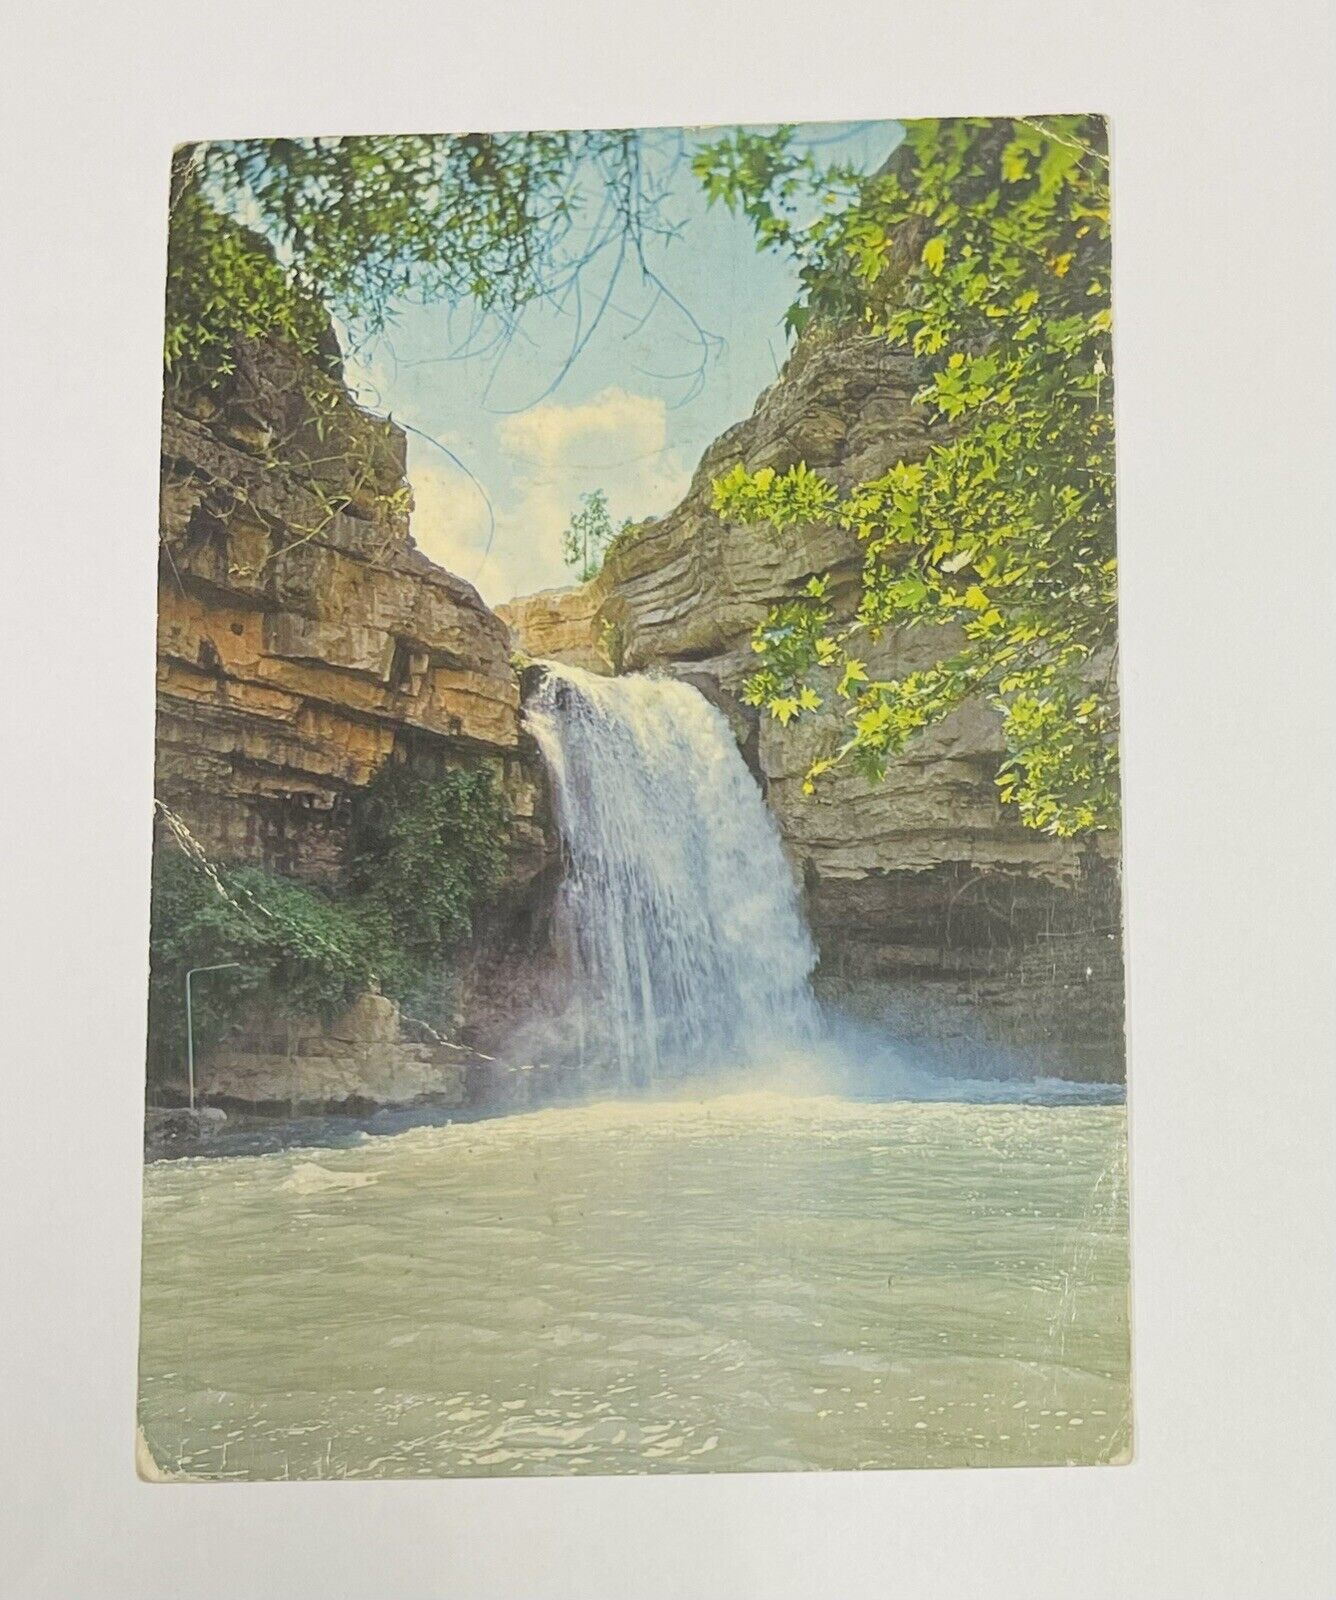 Iraq Postcard, Geli Ali Bag Waterfall Erbil, Message Arabic Language 1982